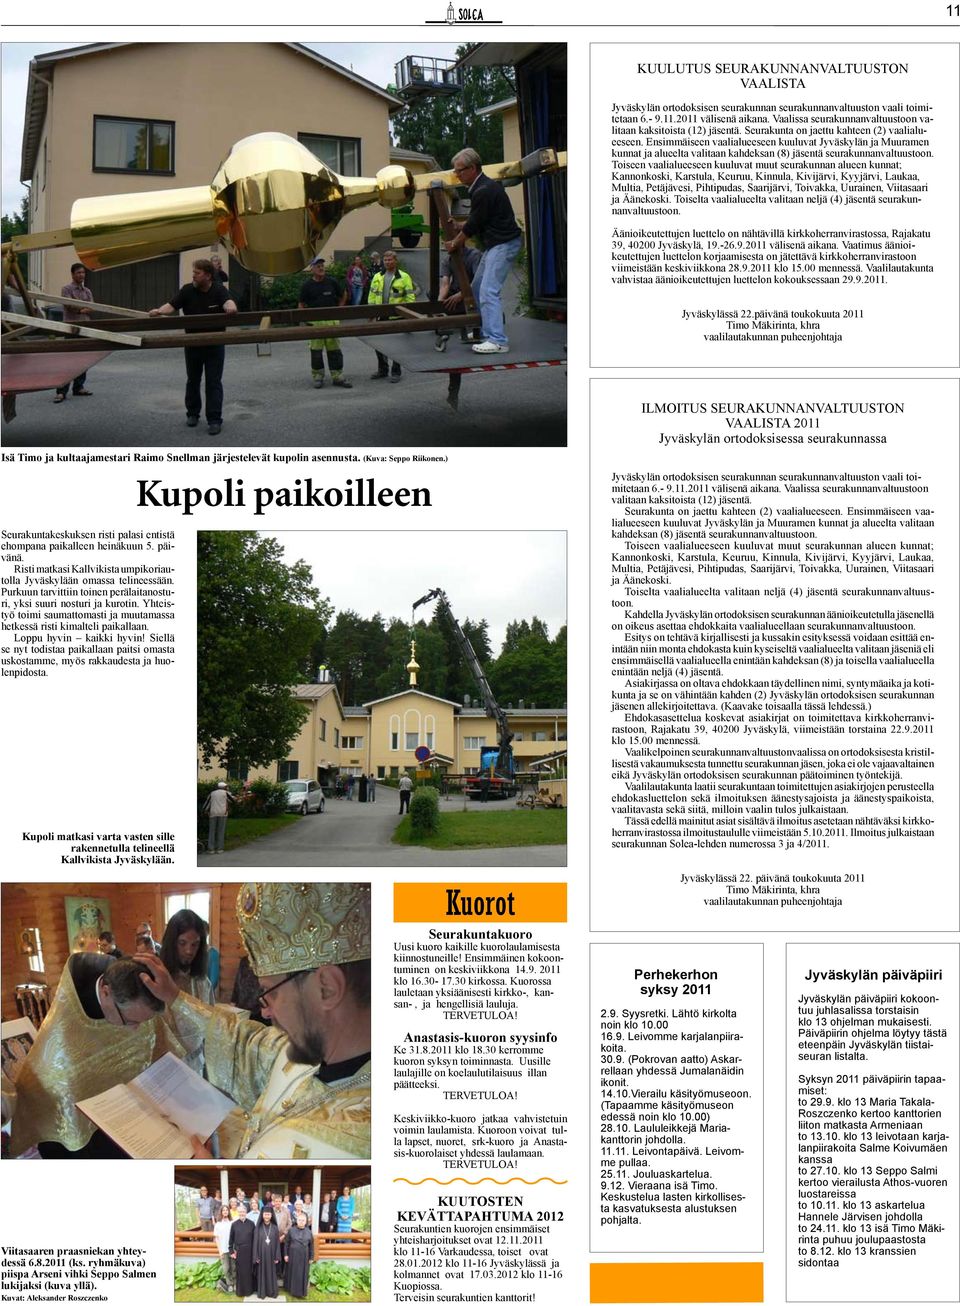 Ensimmäiseen vaalialueeseen kuuluvat Jyväskylän ja Muuramen kunnat ja alueelta valitaan kahdeksan (8) jäsentä seurakunnanvaltuustoon.